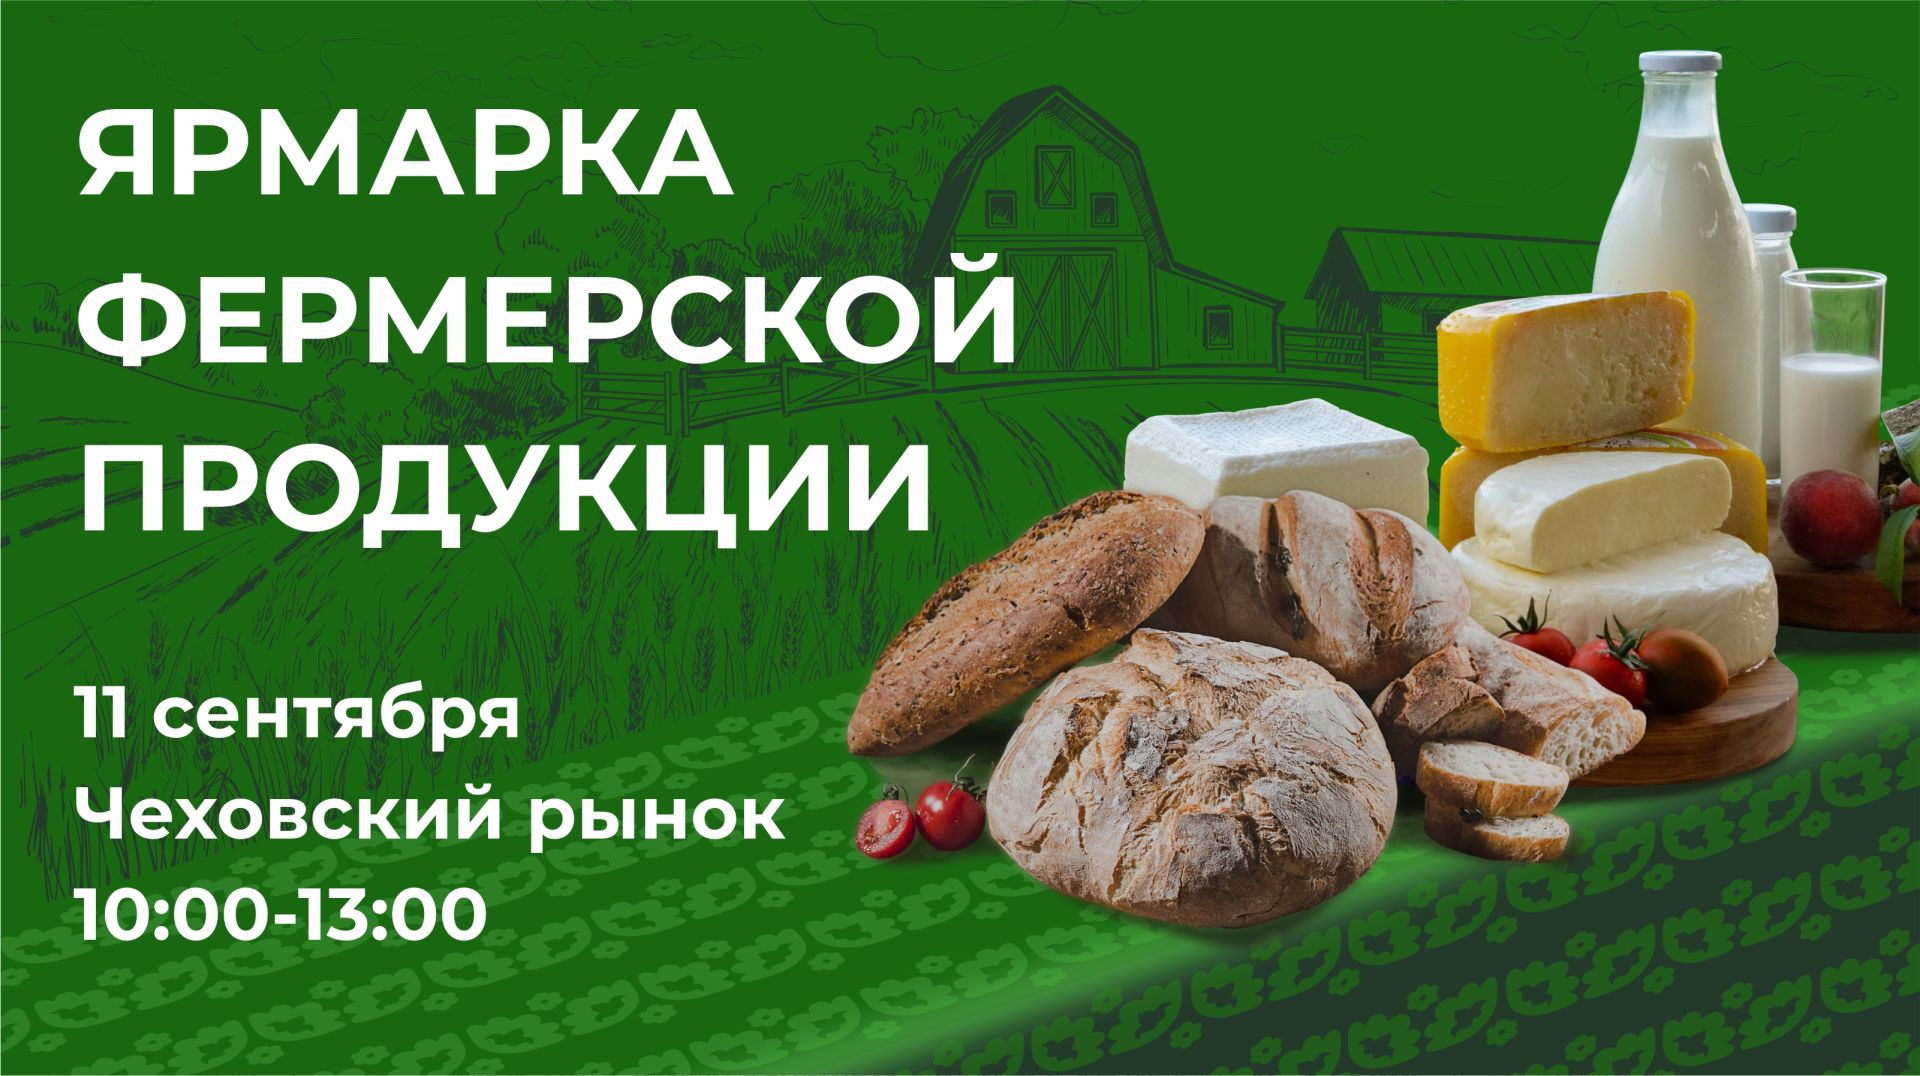 11 сентября на территории Чеховского рынка, в городе Казань состоится Ярмарка фермерских продуктов в рамках проекта «Туган як»